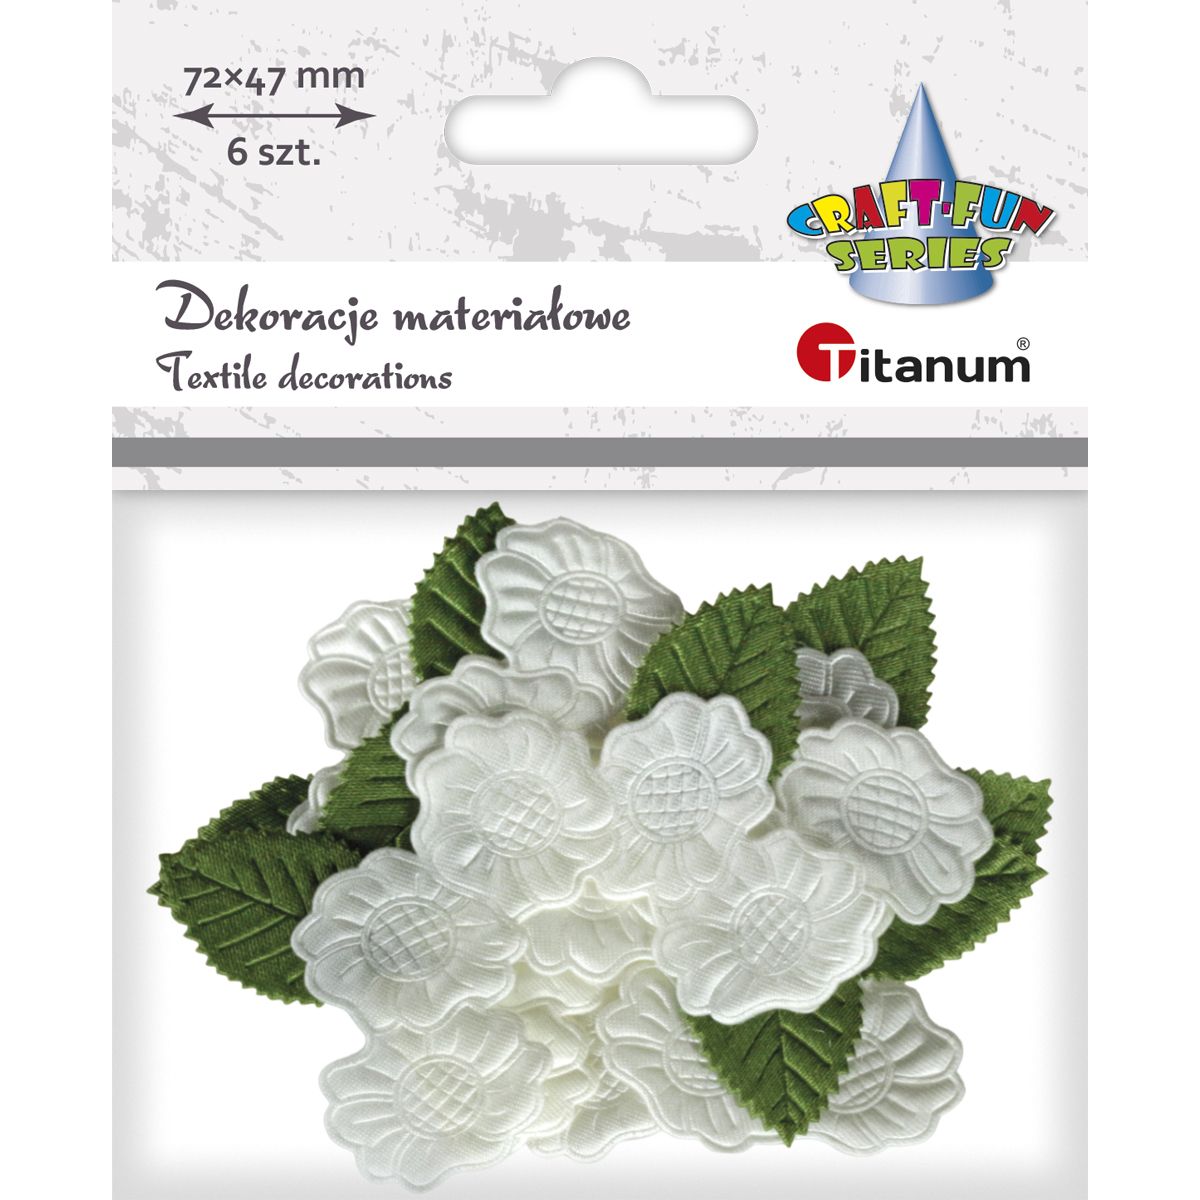 Ozdoba materiałowa Titanum Craft-Fun Series kwiaty gardenii (BY132)